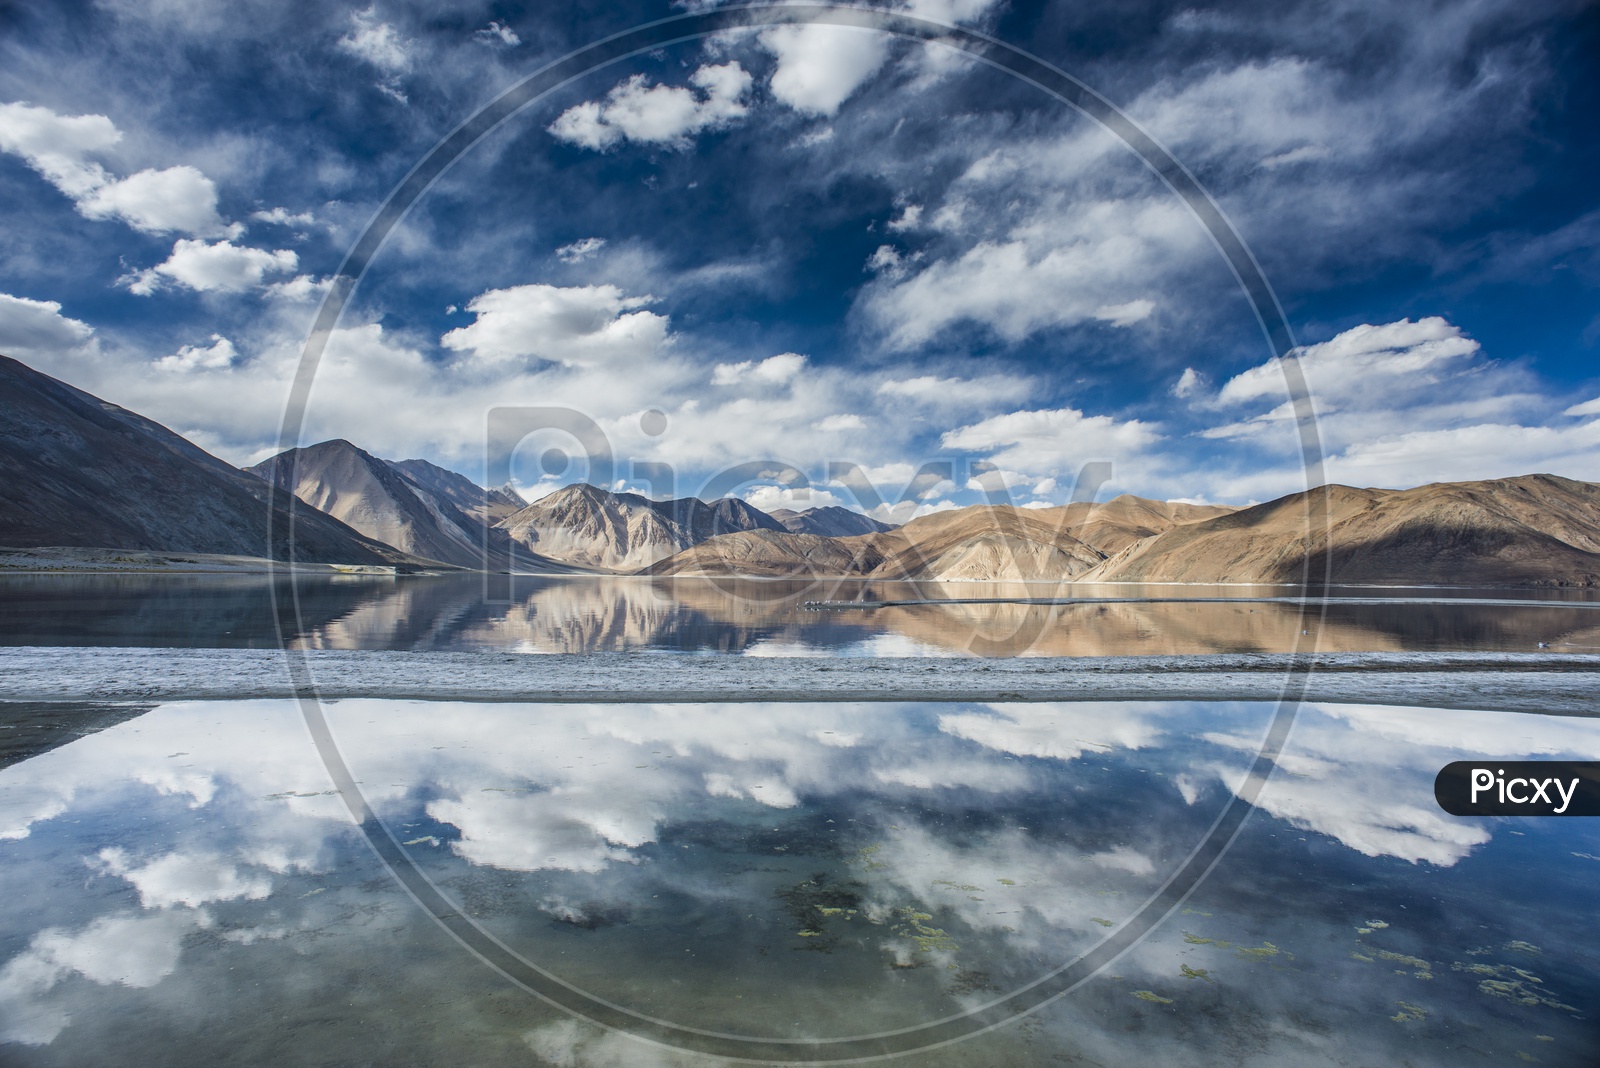 Reflections of Pangong Lake, Ladakh